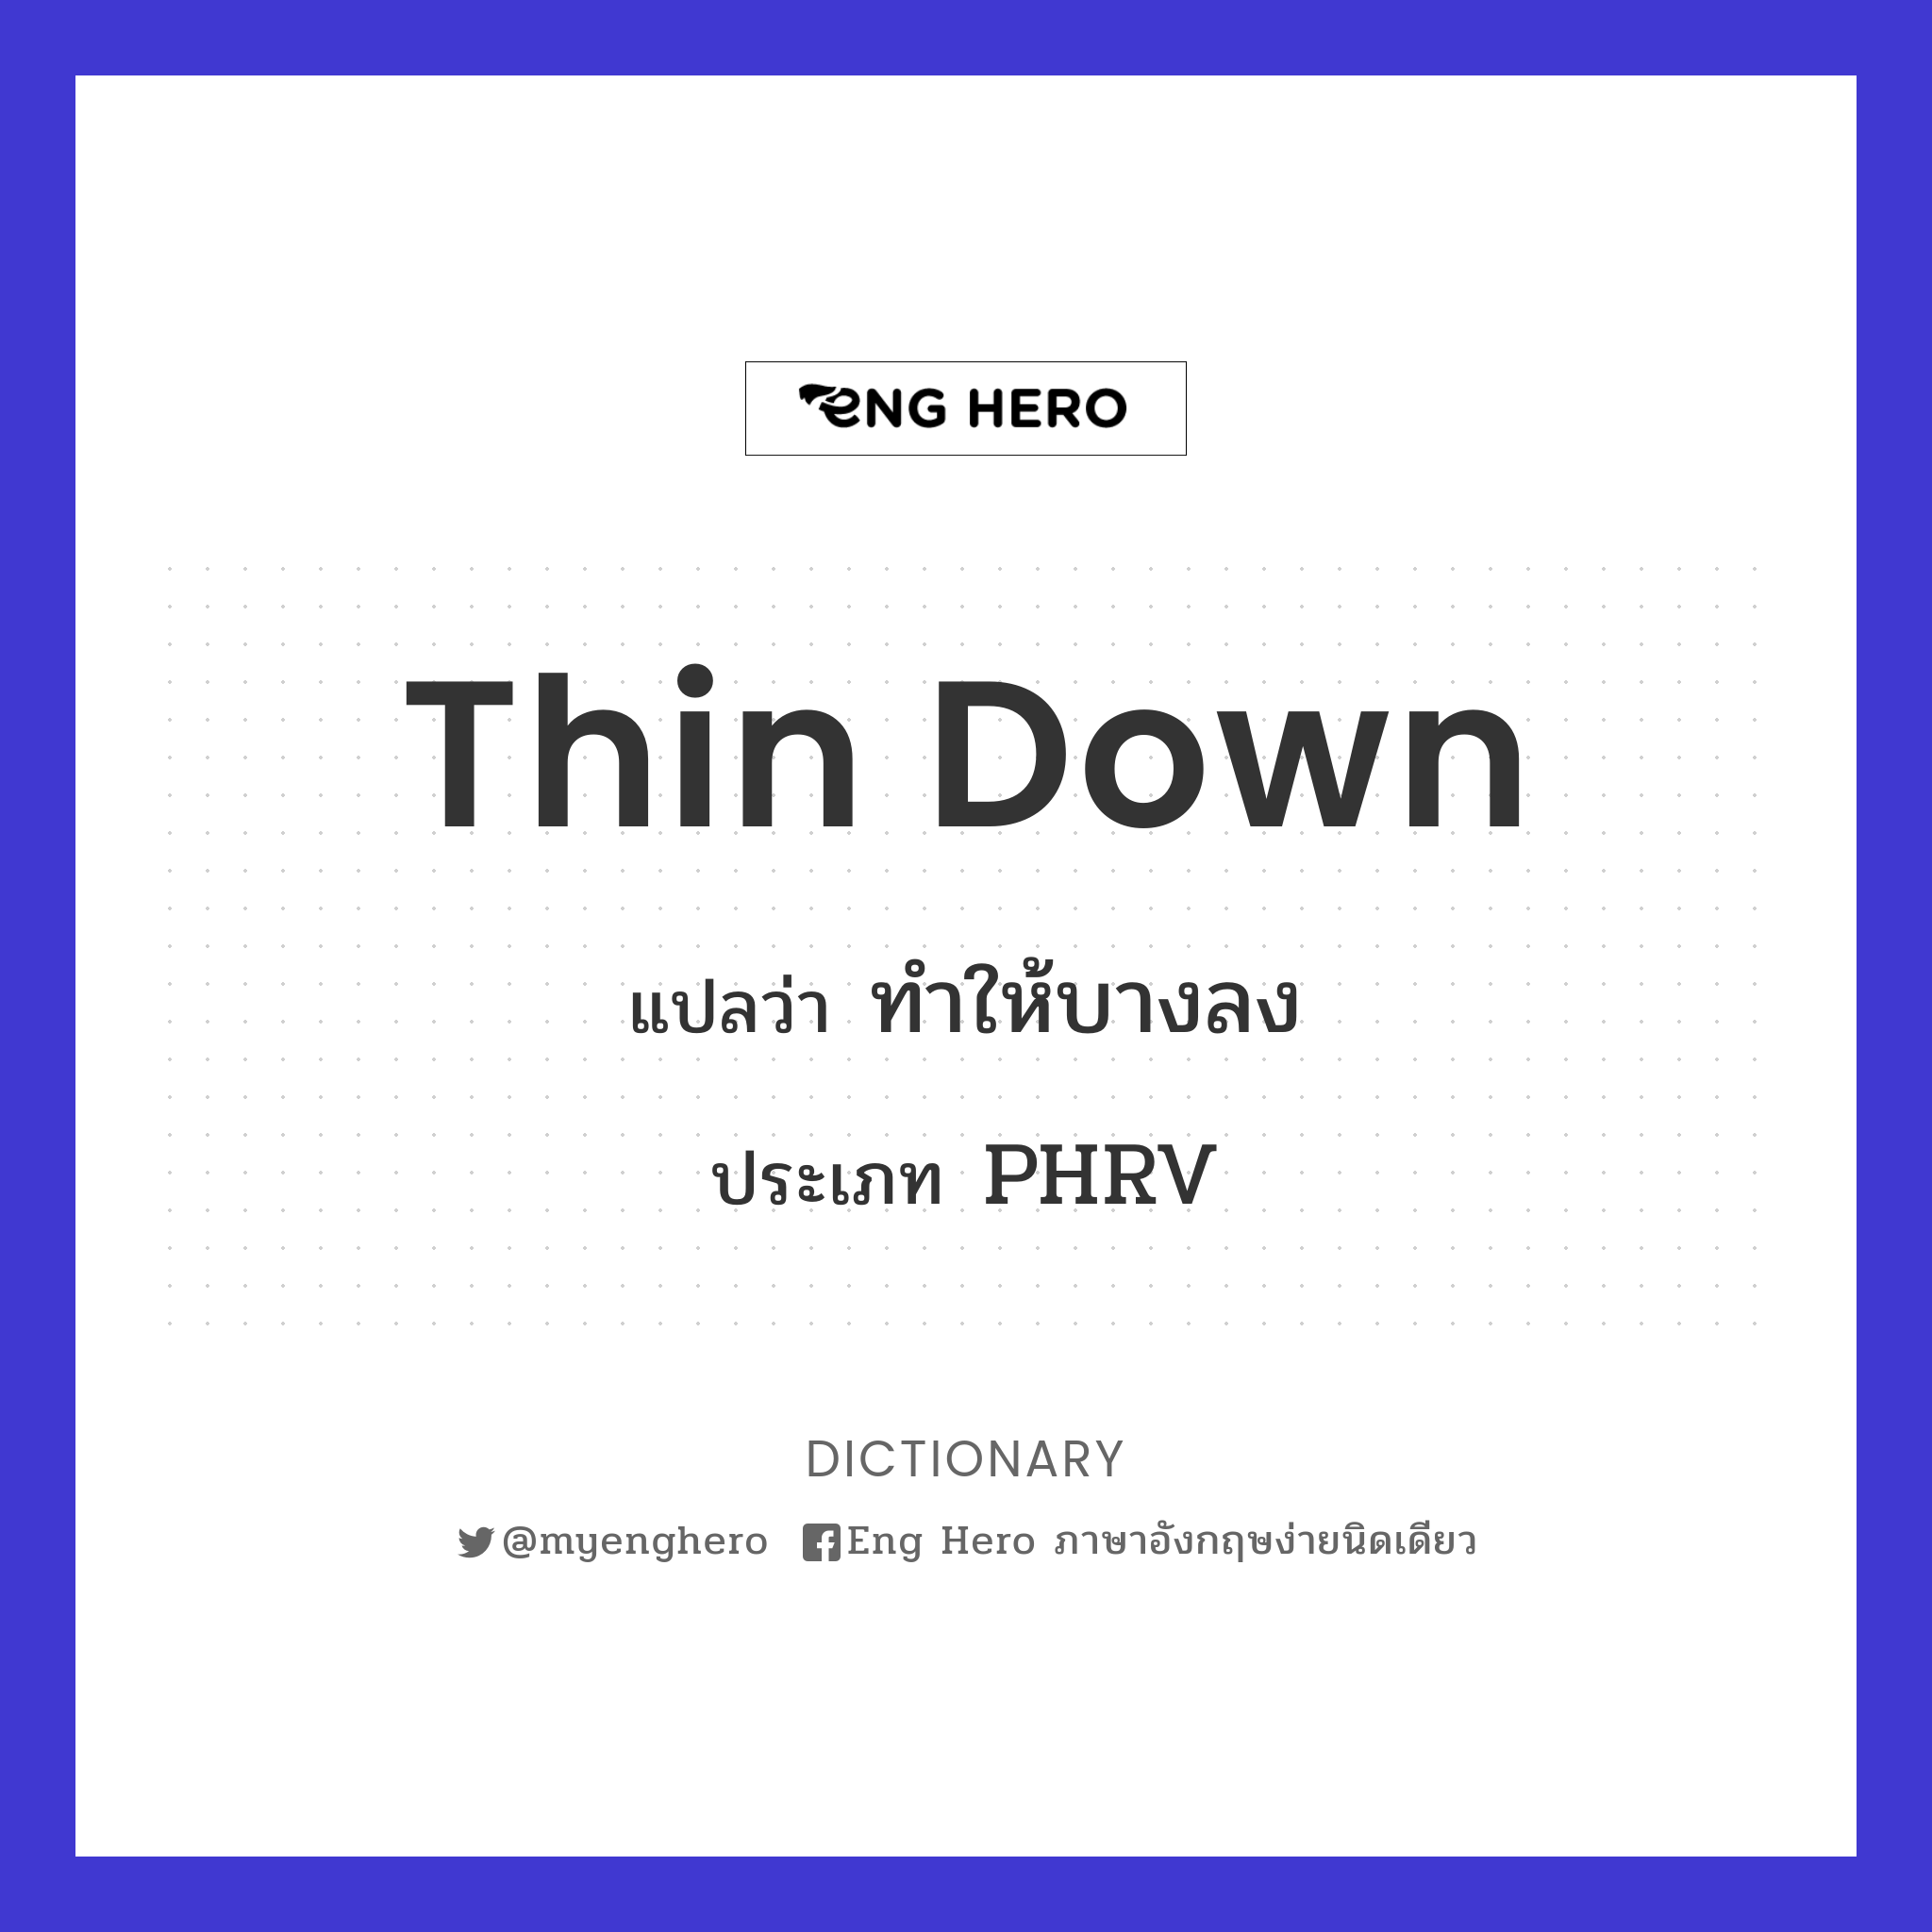 thin down